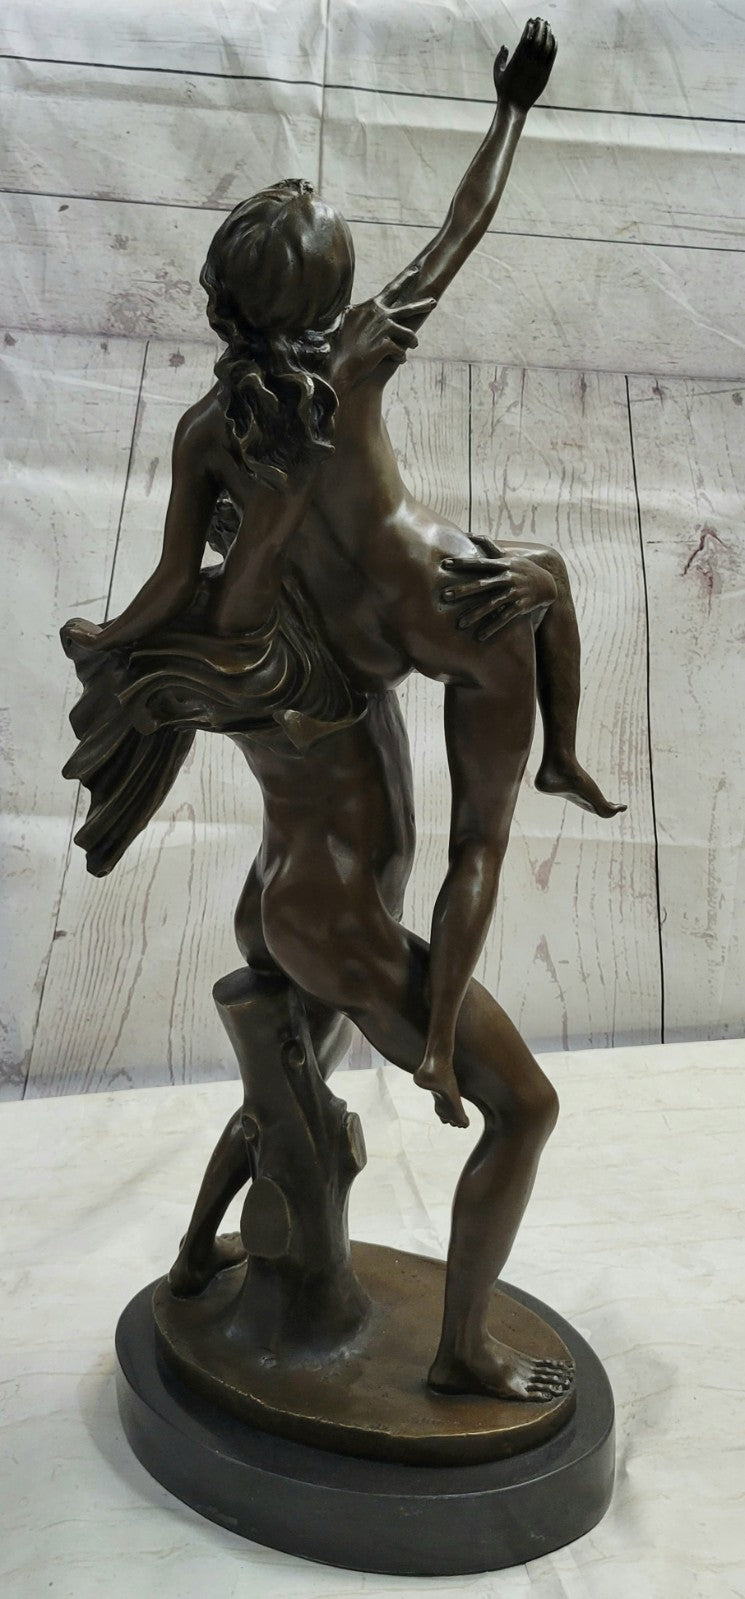 Dance Bronze Sculptures capture the rhythmic, seductive movements of couples